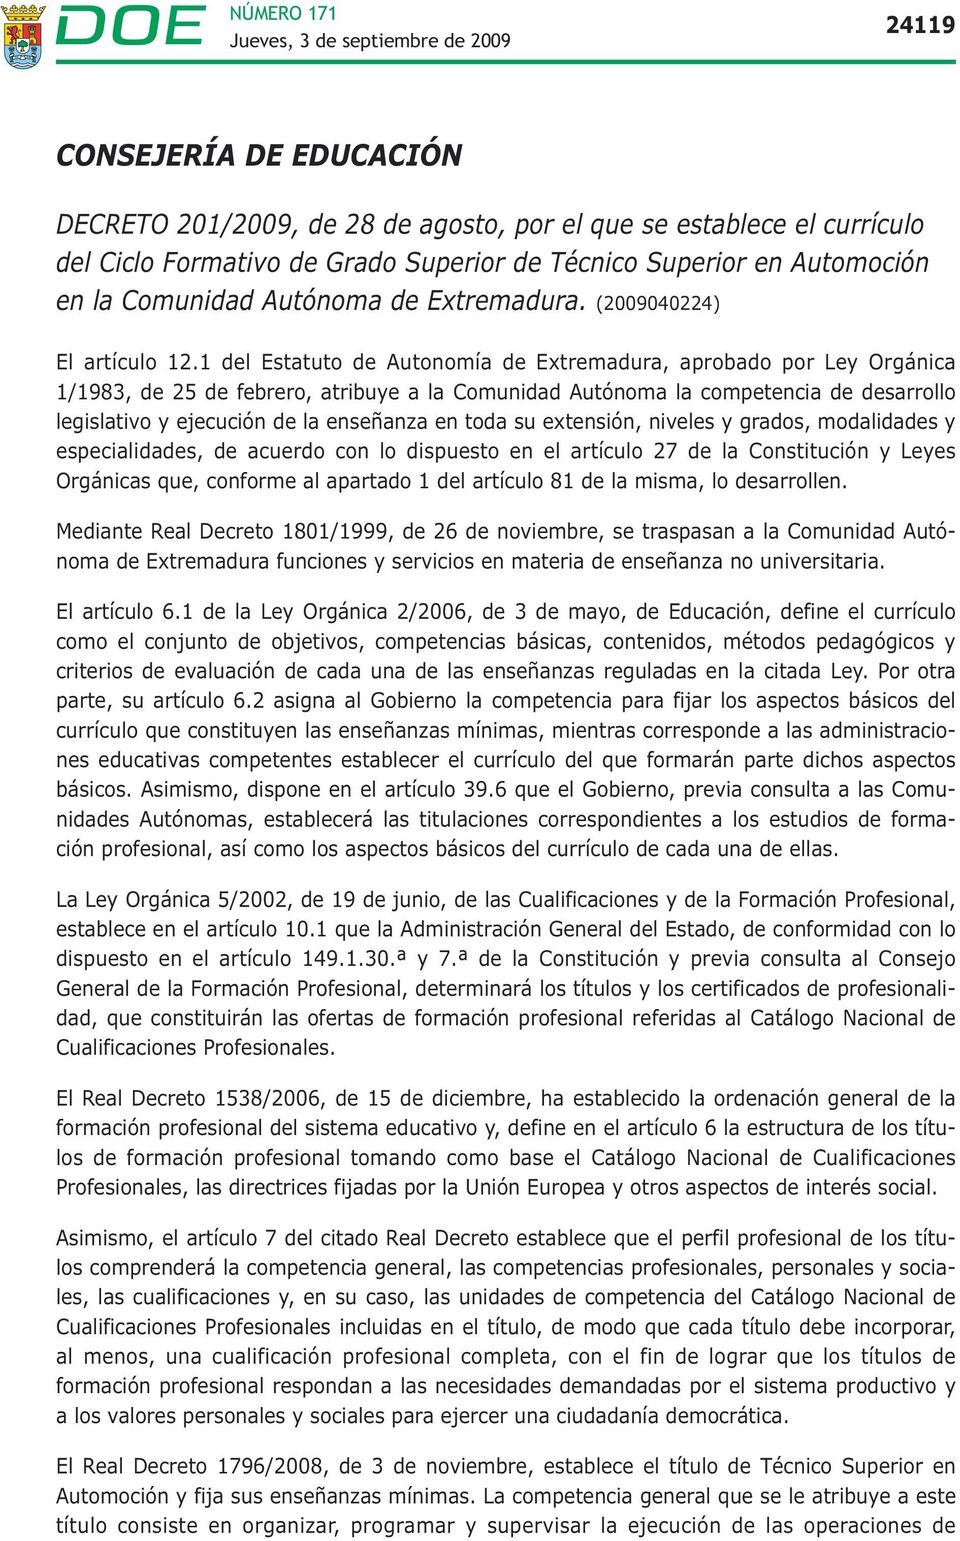 1 del Estatuto de Autonomía de Extremadura, aprobado por Ley Orgánica 1/1983, de 25 de febrero, atribuye a la Comunidad Autónoma la competencia de desarrollo legislativo y ejecución de la enseñanza